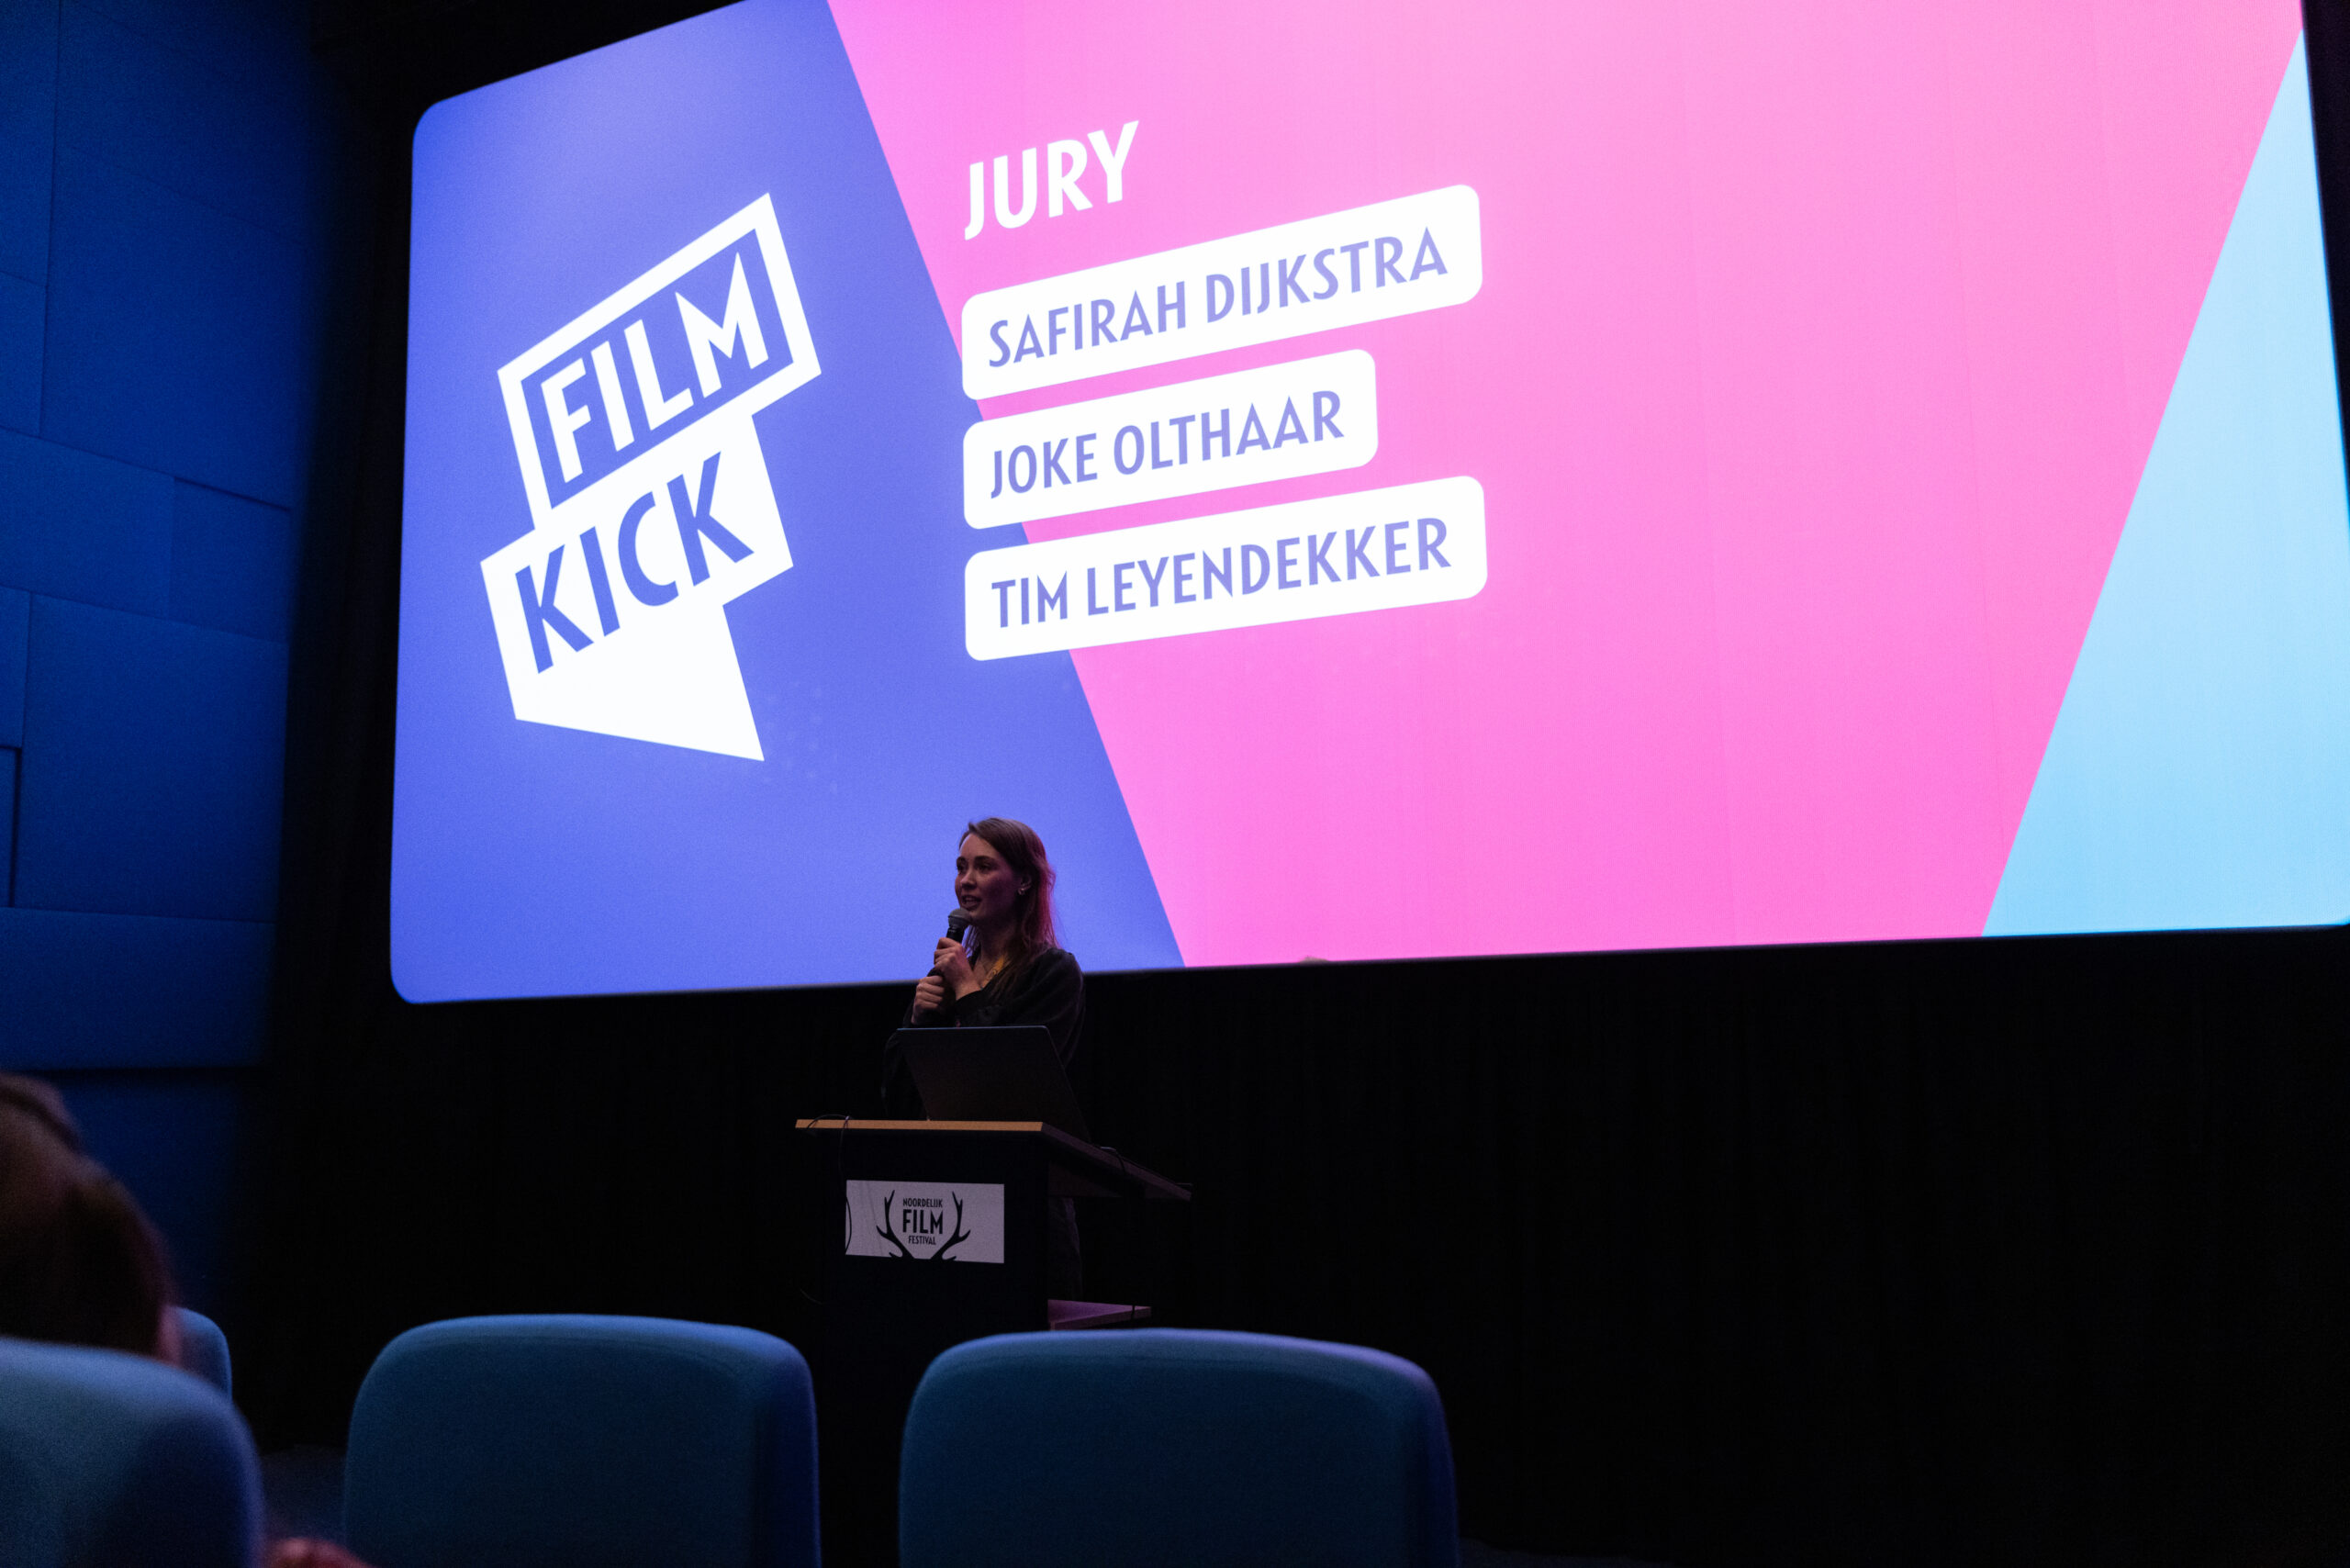 Juryleden Filmkick competitie Noordelijk Film Festival